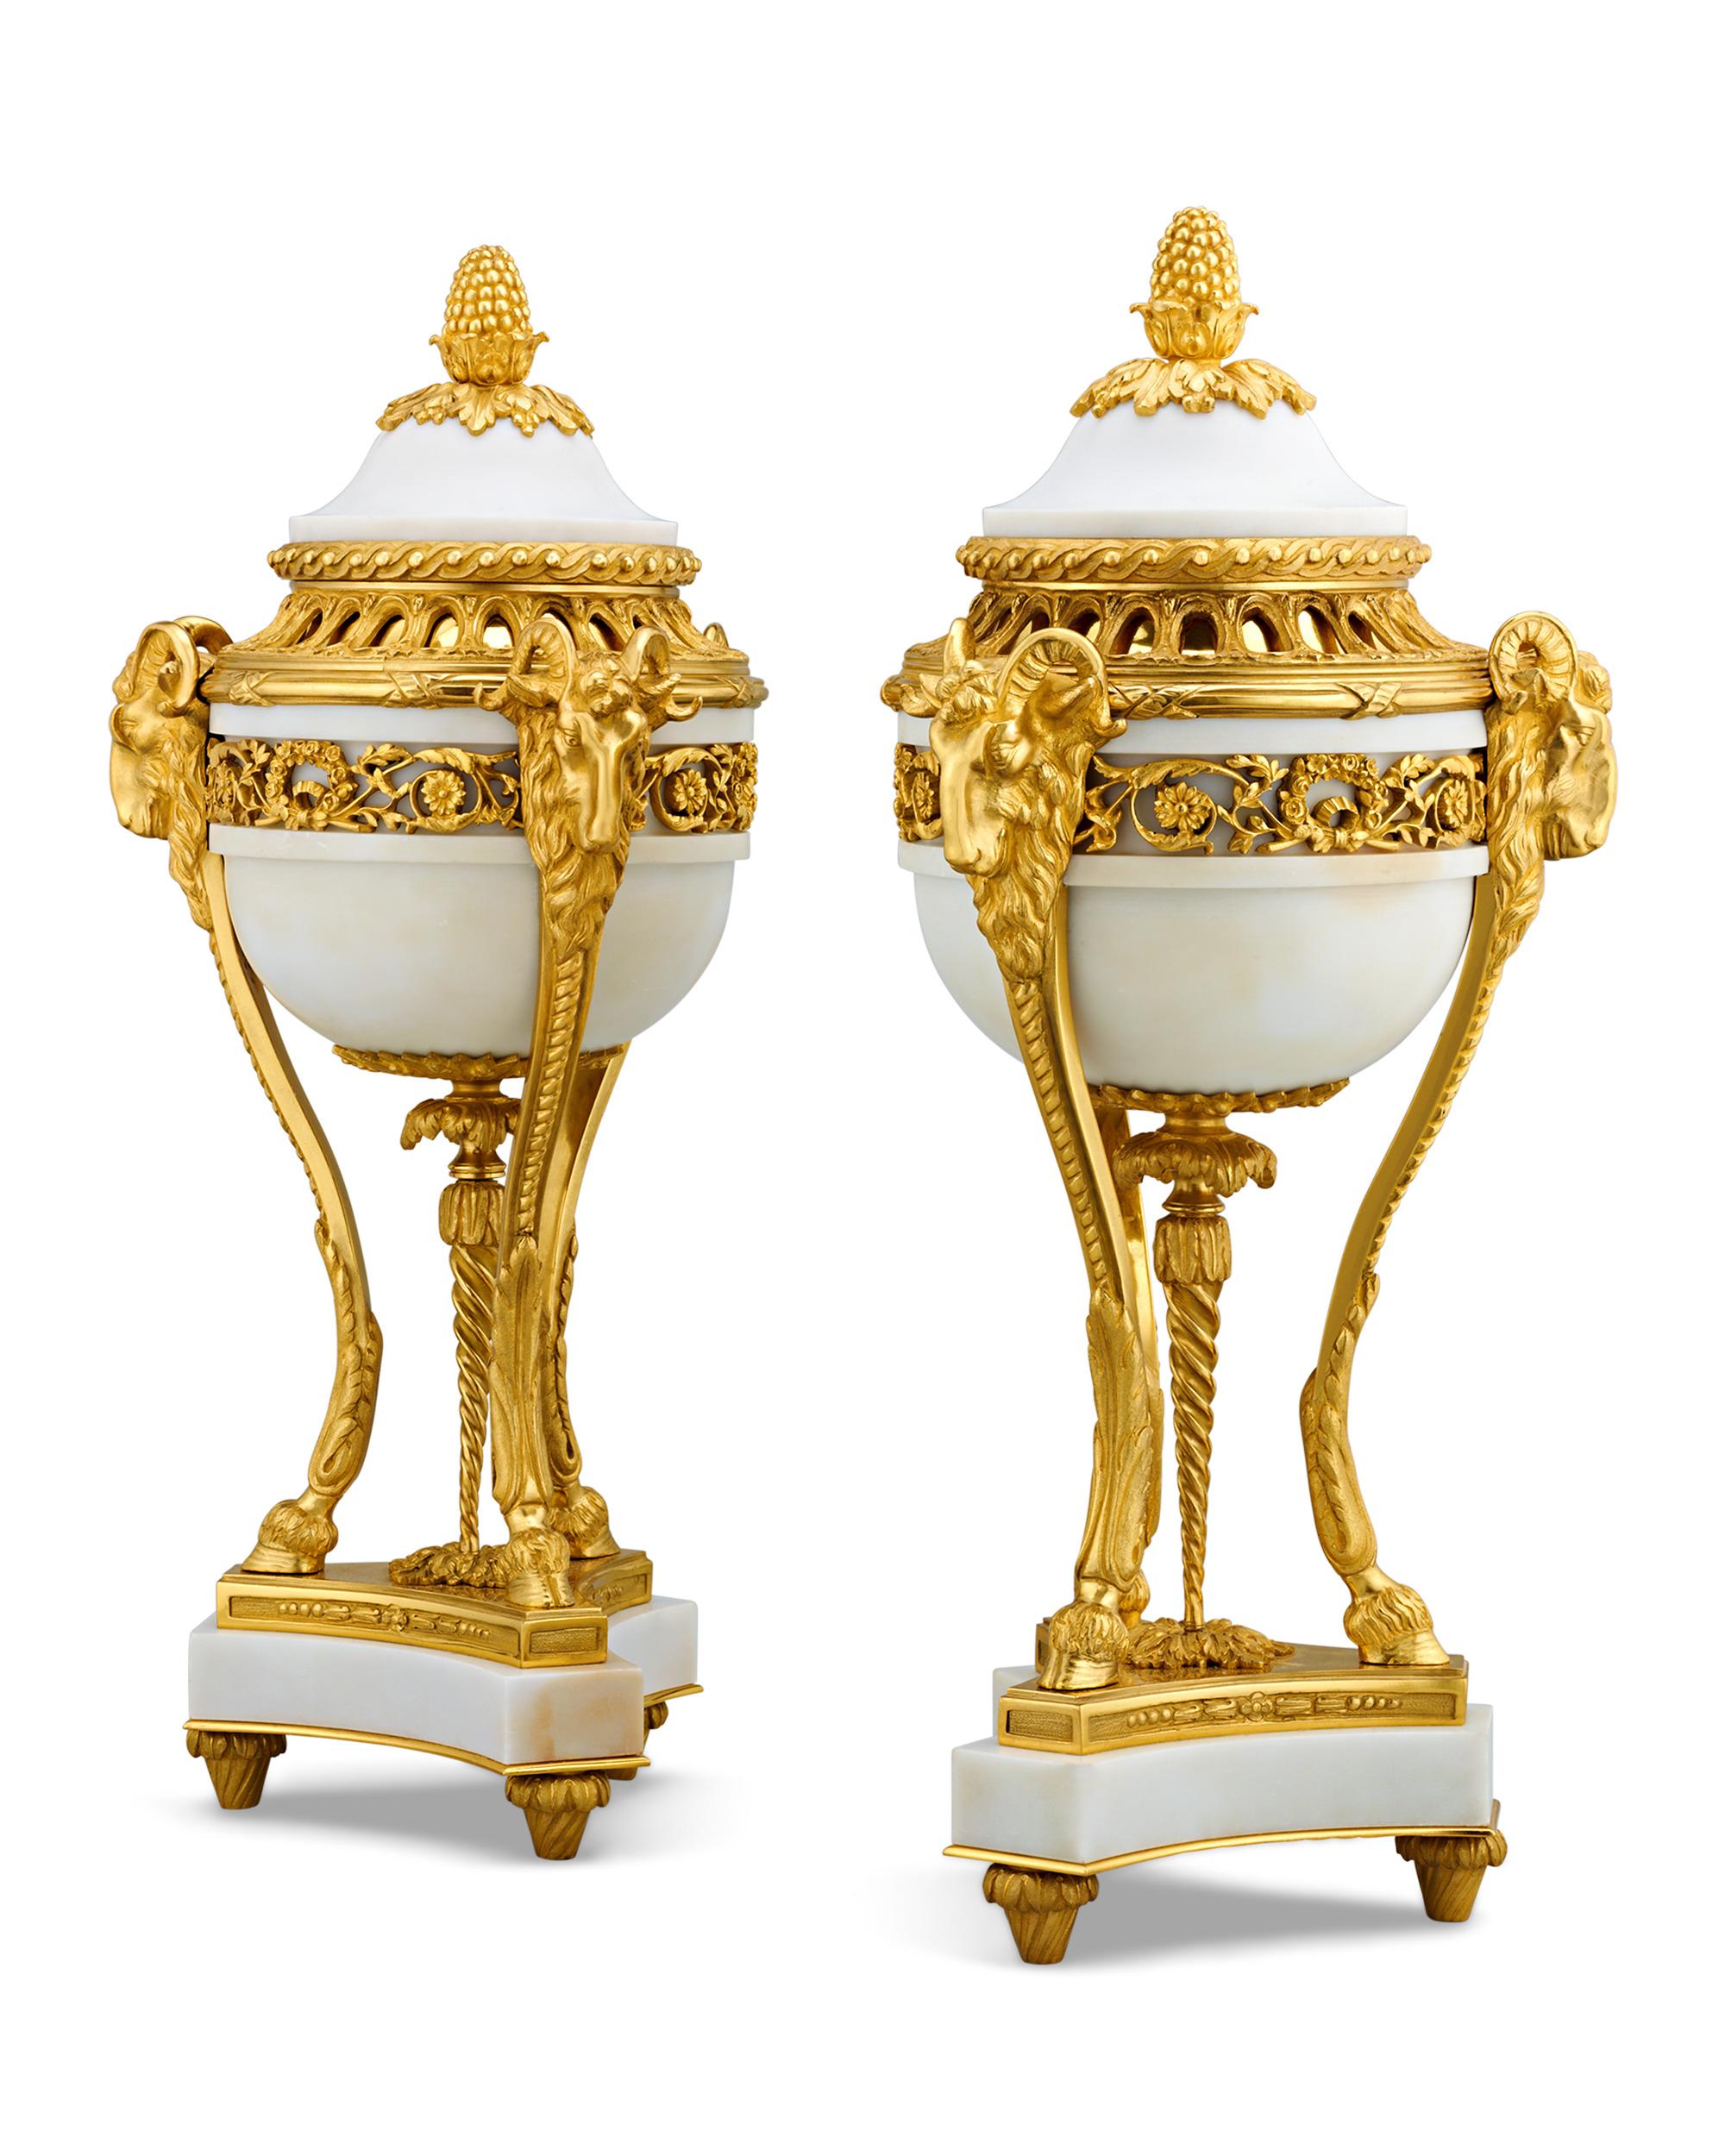 Die Körper dieses Paares von Vasen im Louis-XVI-Stil, die fast einen Meter hoch sind, sind aus einem wunderschönen weißen Marmor gefertigt. Doré-Bronze-Beschläge im Louis-XVI-Stil stehen in perfektem Kontrast zu den hellen Farbtönen des Hartsteins.